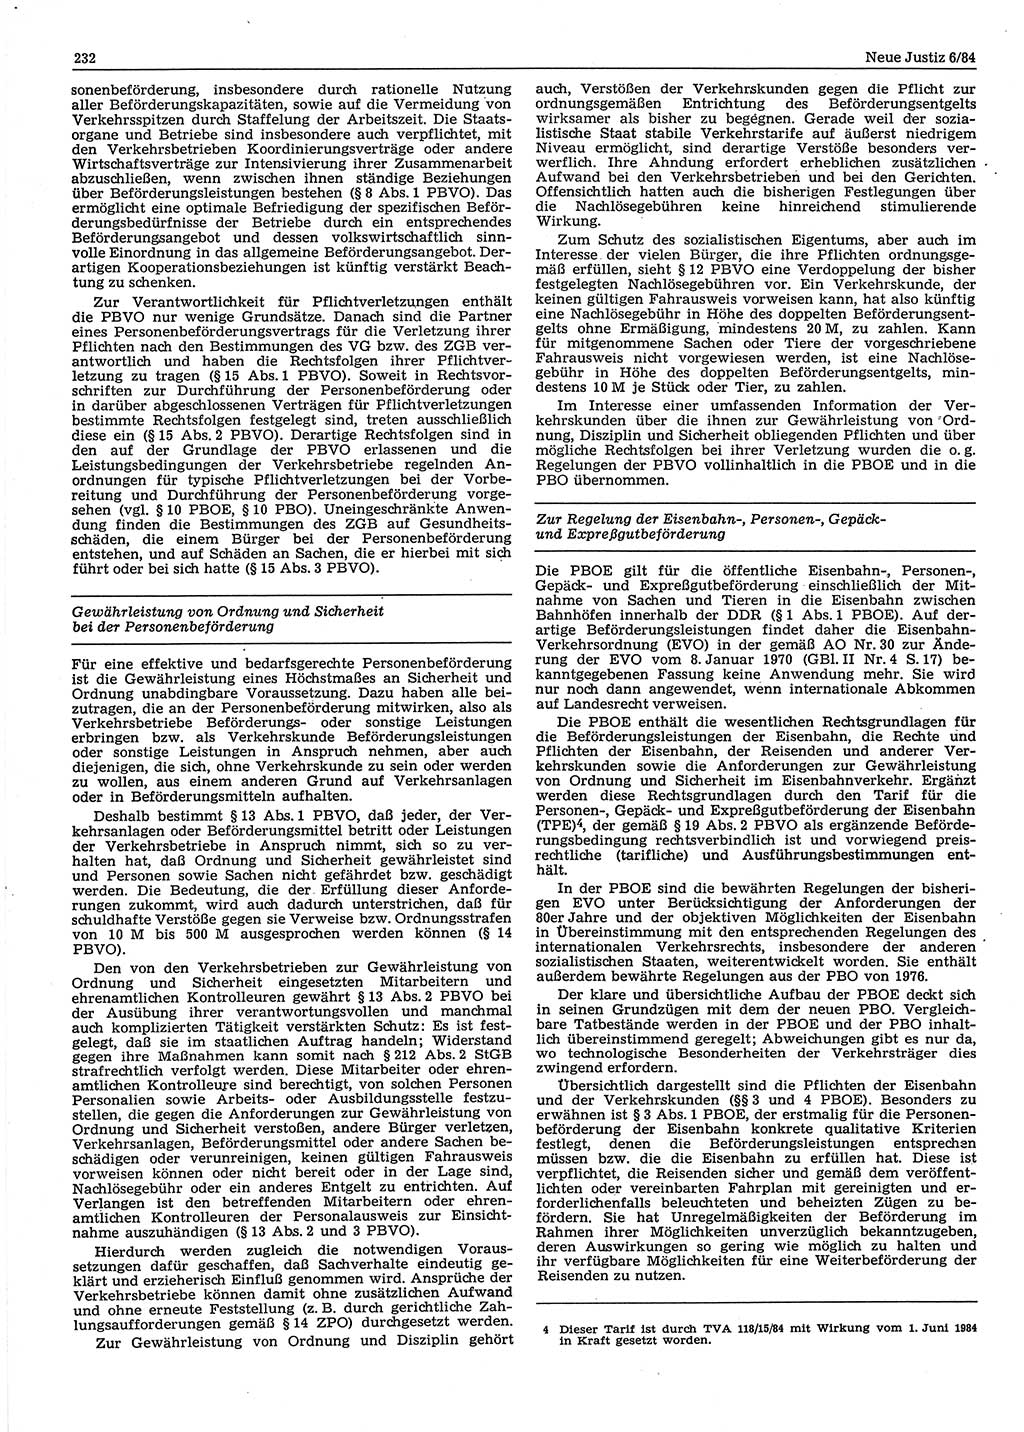 Neue Justiz (NJ), Zeitschrift für sozialistisches Recht und Gesetzlichkeit [Deutsche Demokratische Republik (DDR)], 38. Jahrgang 1984, Seite 232 (NJ DDR 1984, S. 232)